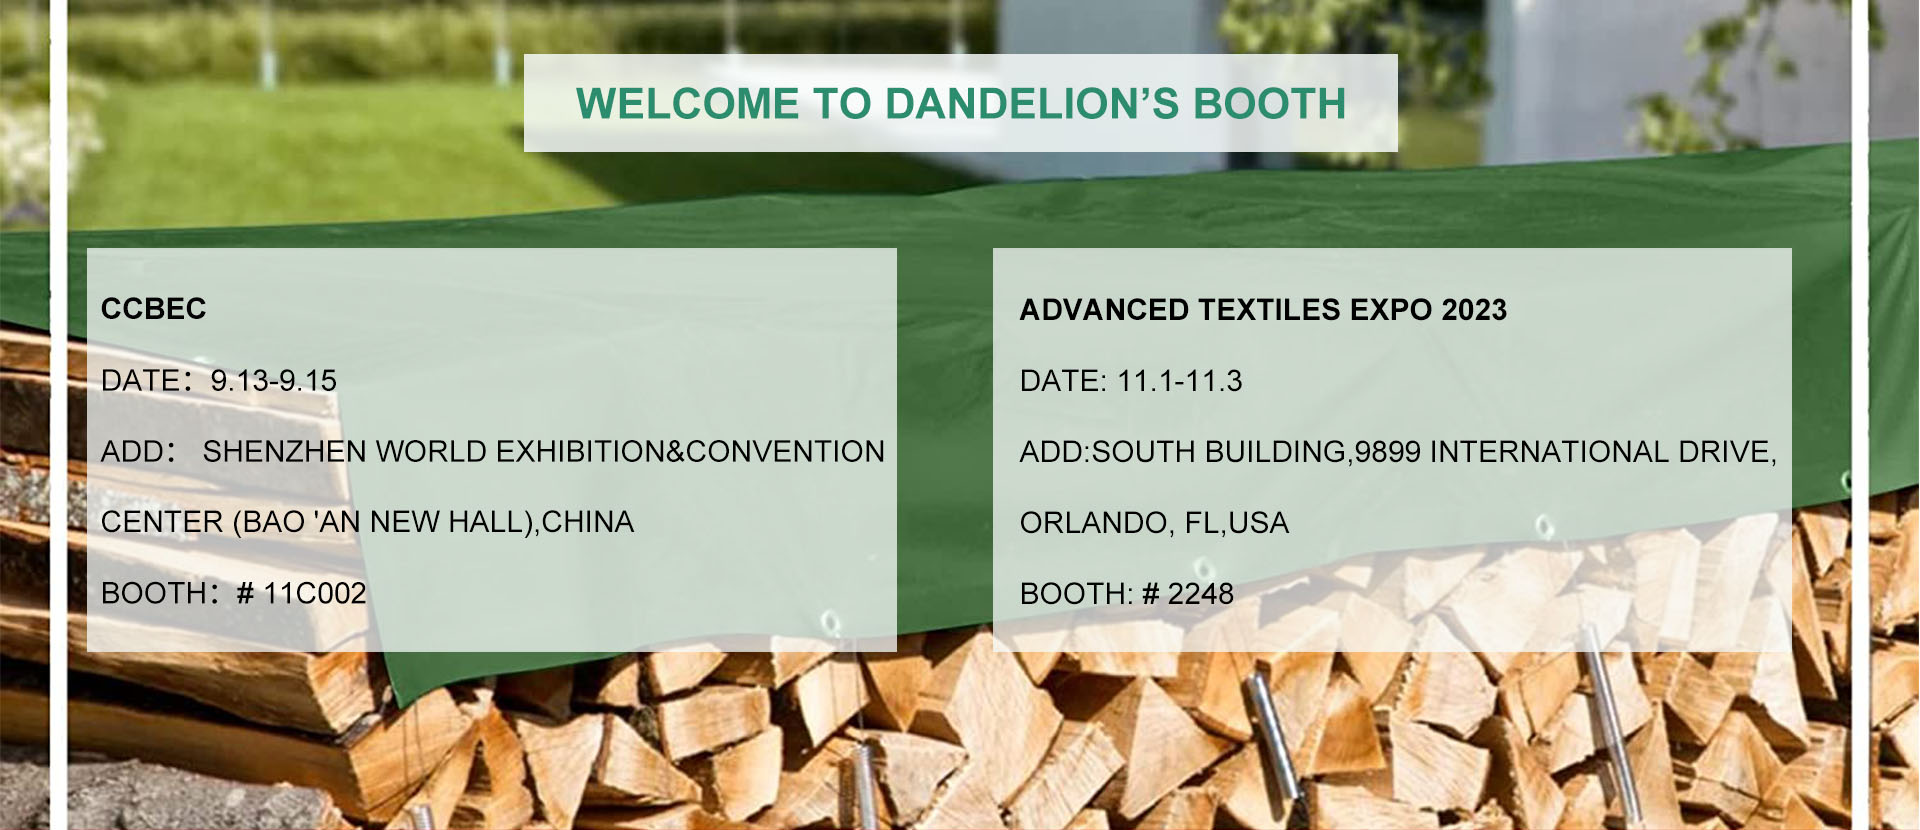 Dandelion's Exhibition Schedule Banner